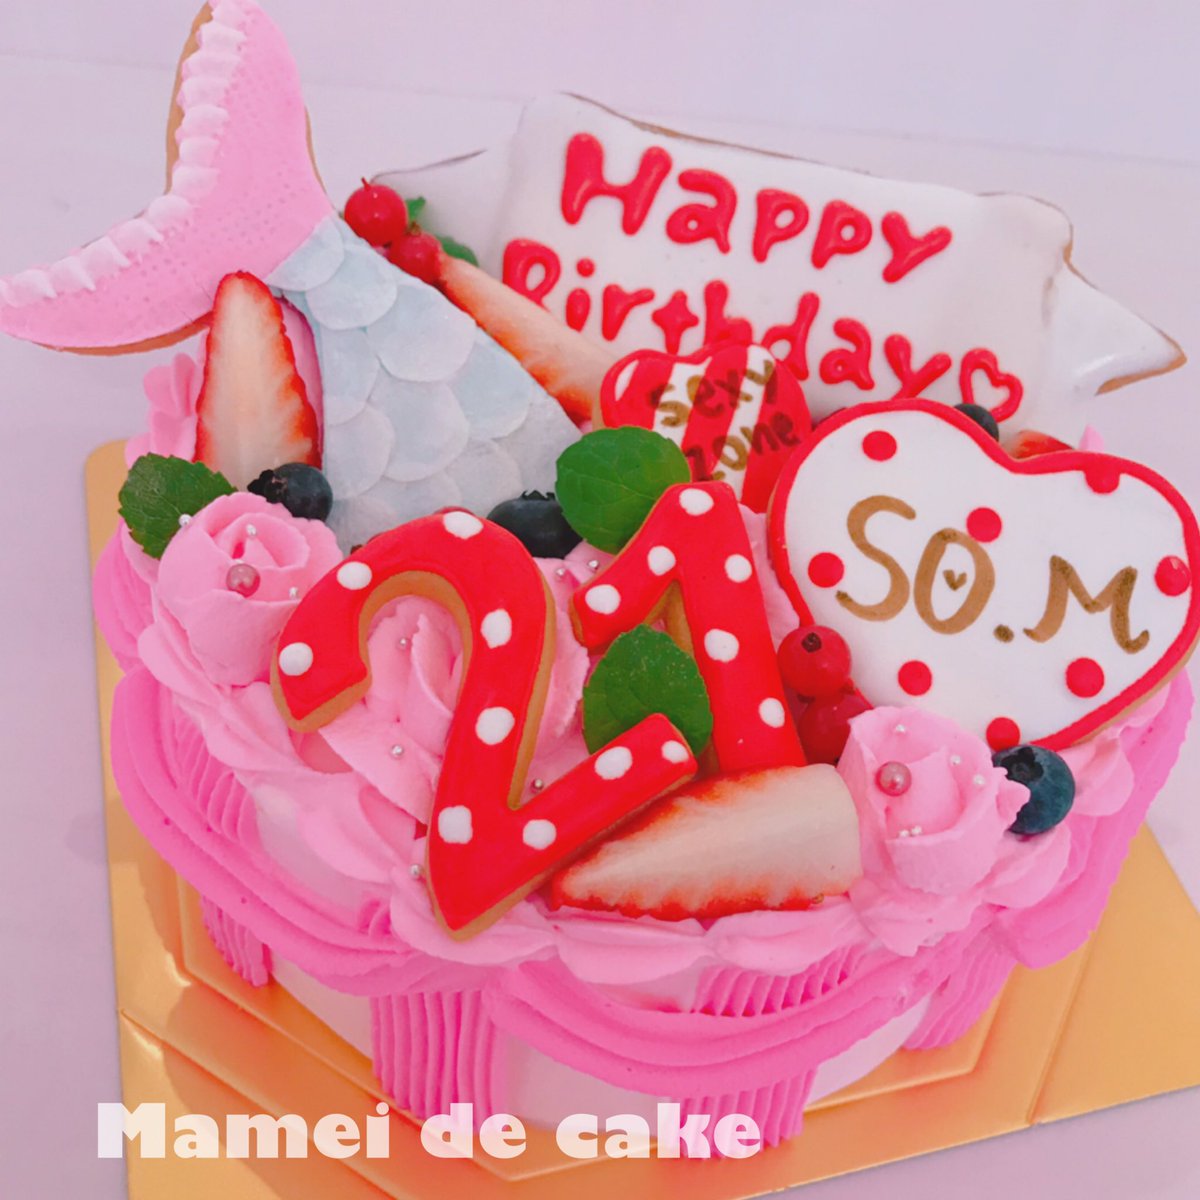 Mamei De Cake マーメイドケーキ Mermaid Cake ケーキ オーダーケーキ 誕生日 ケーキ バースデーケーキ キャラクターケーキ 似顔絵ケーキ クリスマスケーキ マーメイドケーキ 誕生日 サプライズ カフェ クリスマス アイシングクッキー